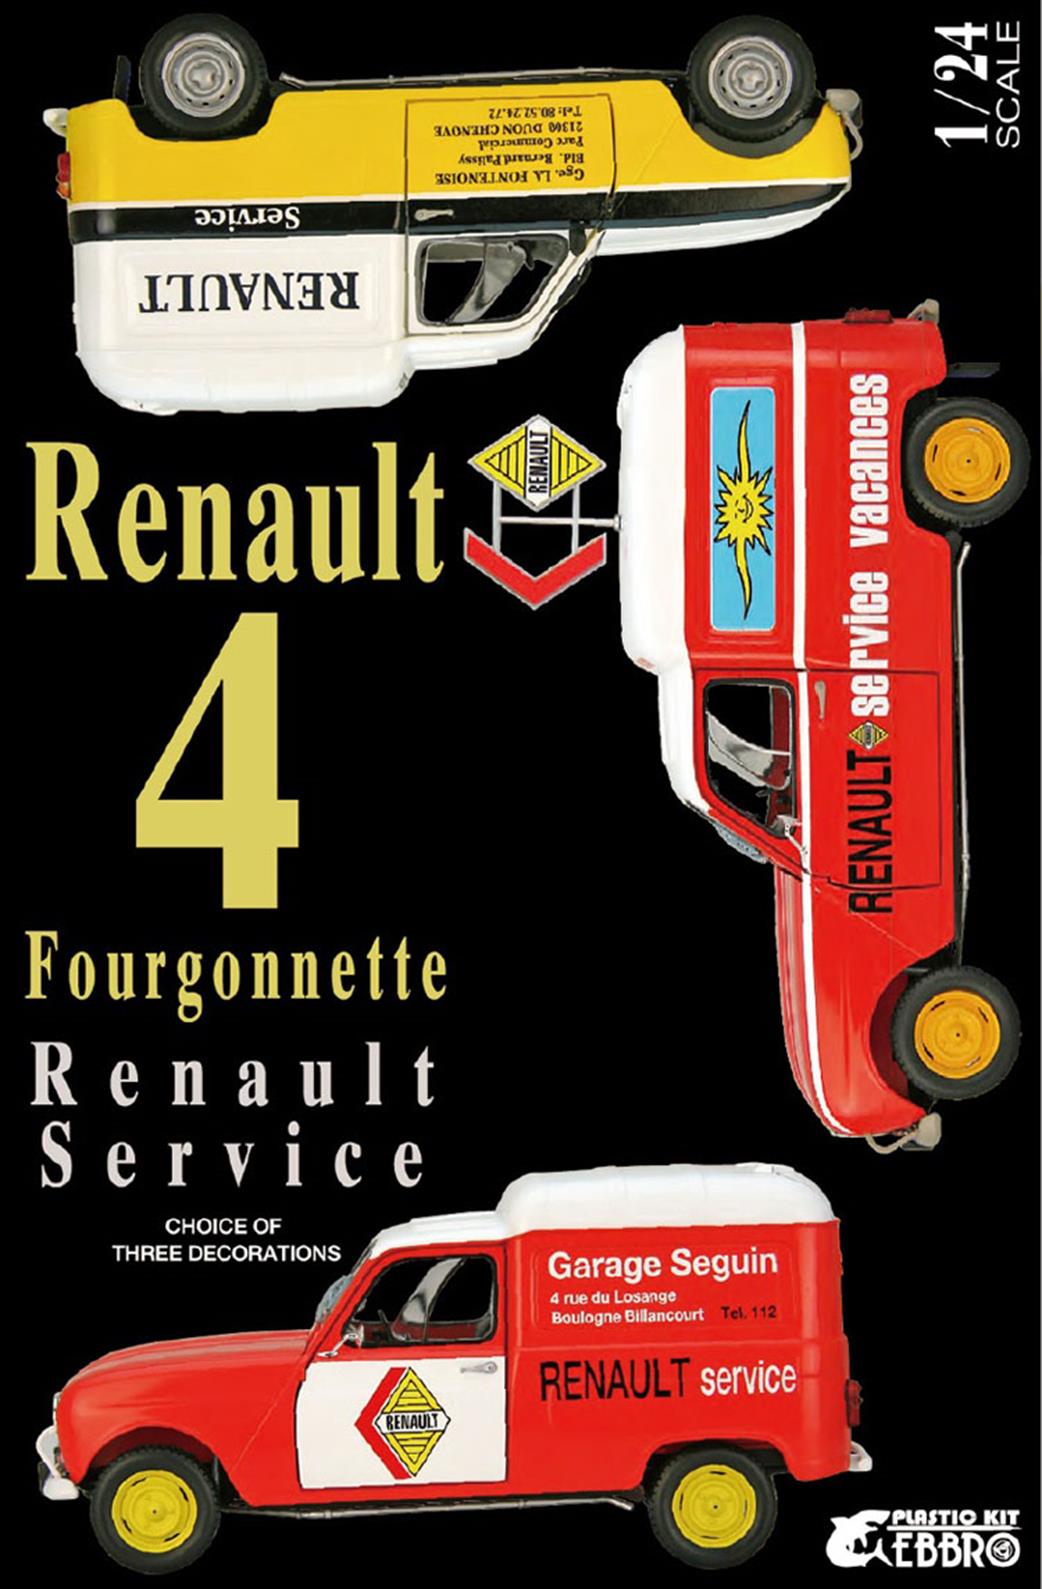 Ebbro 1/24 E25012 Renault 4 Fourgonnette Service Car Kit